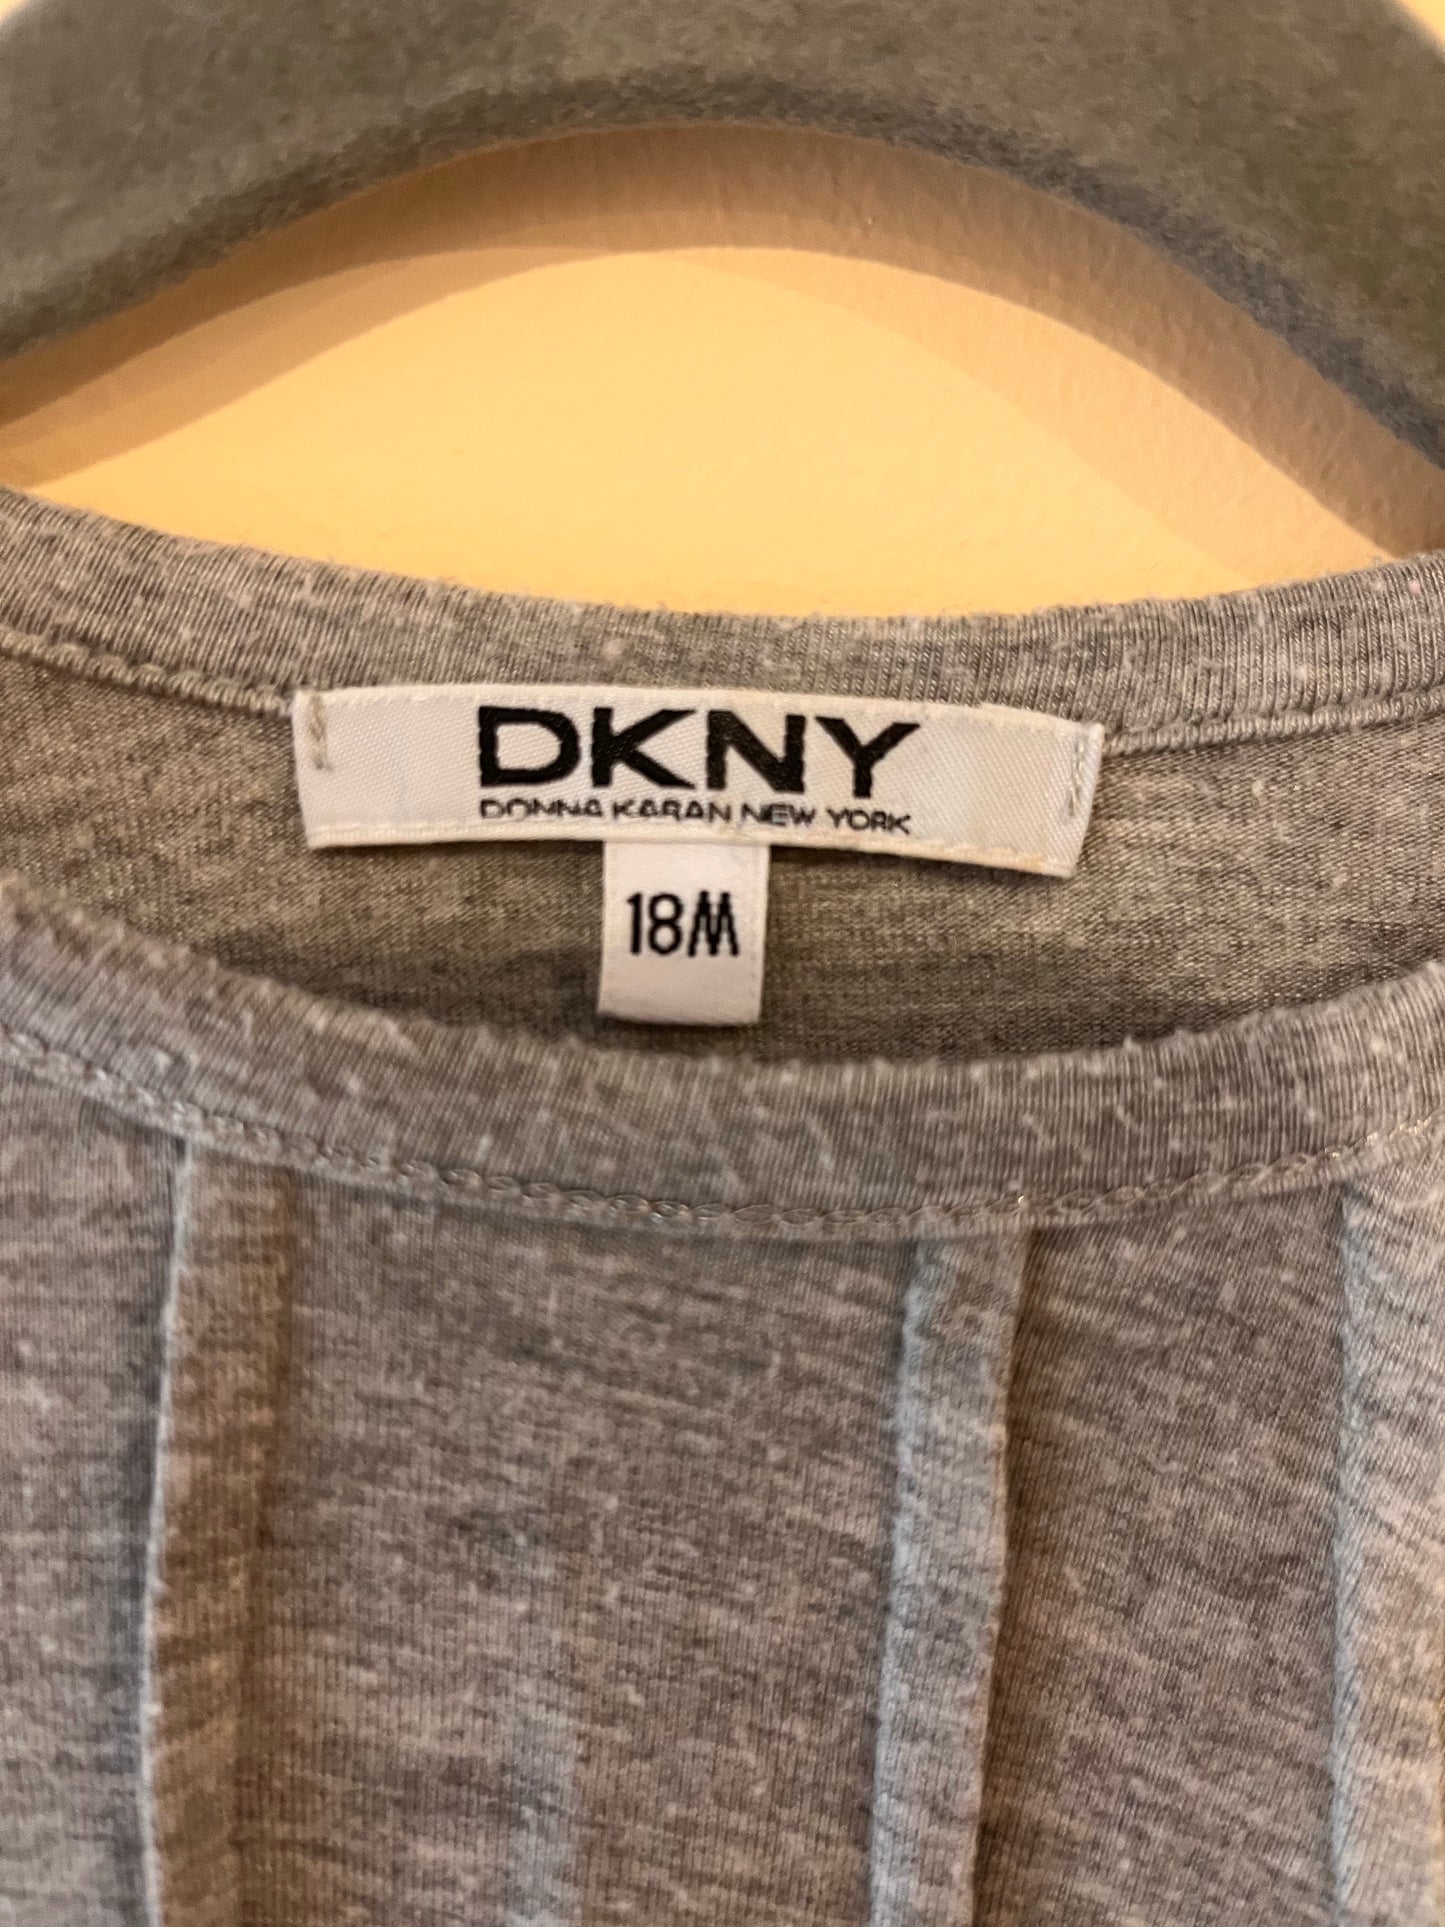 DKNY Flowy Modal Dress (18M)